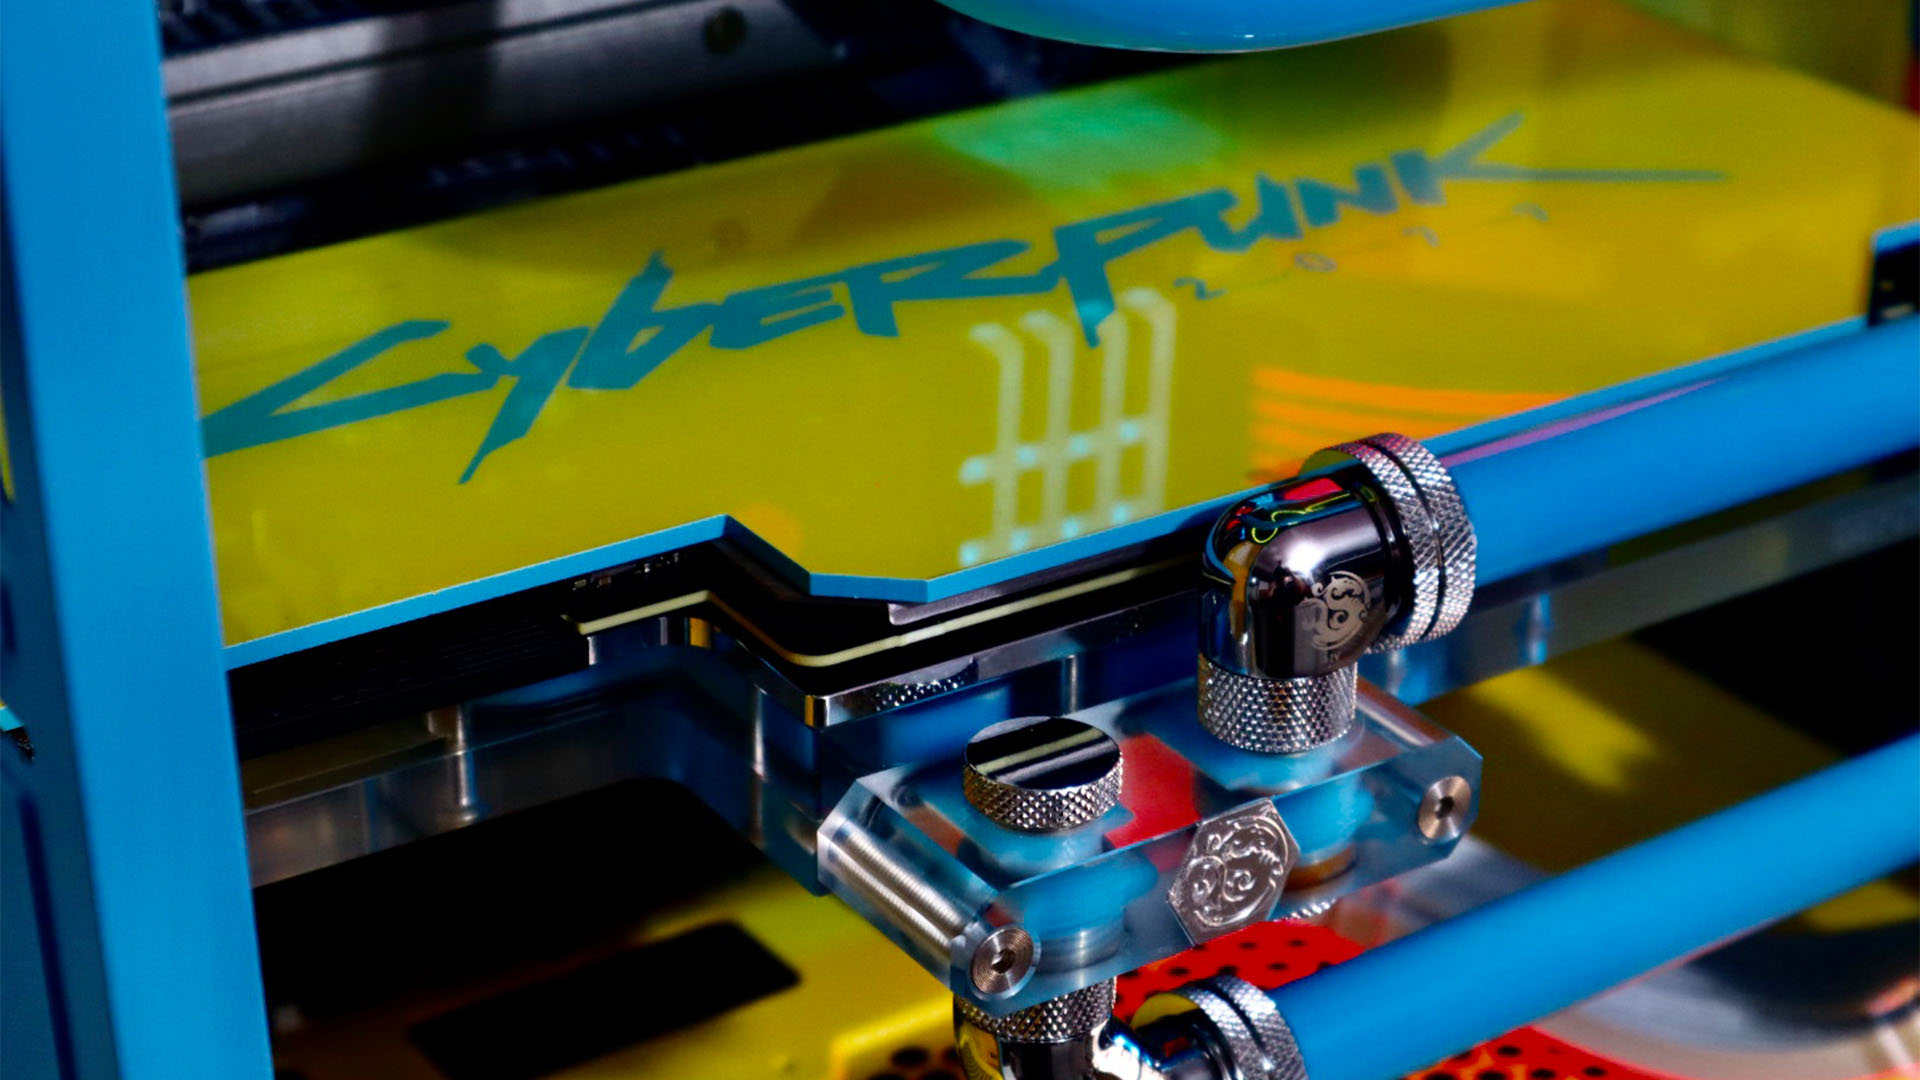 Le PC de jeu Cyberpunk 2077 avec une plaque arrière GPU personnalisée jaune et bleue